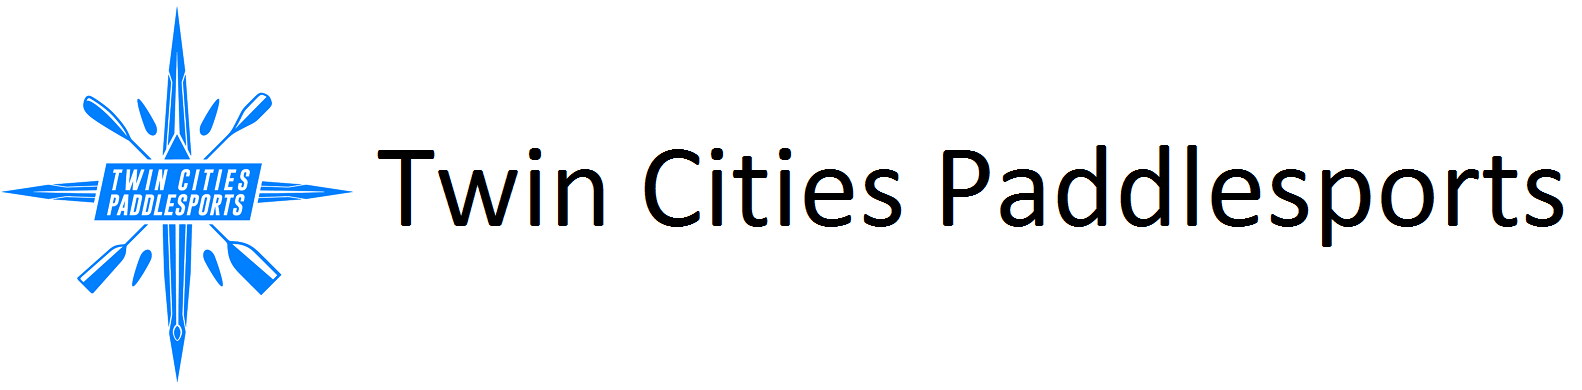 Twin Cities Paddlesports logo